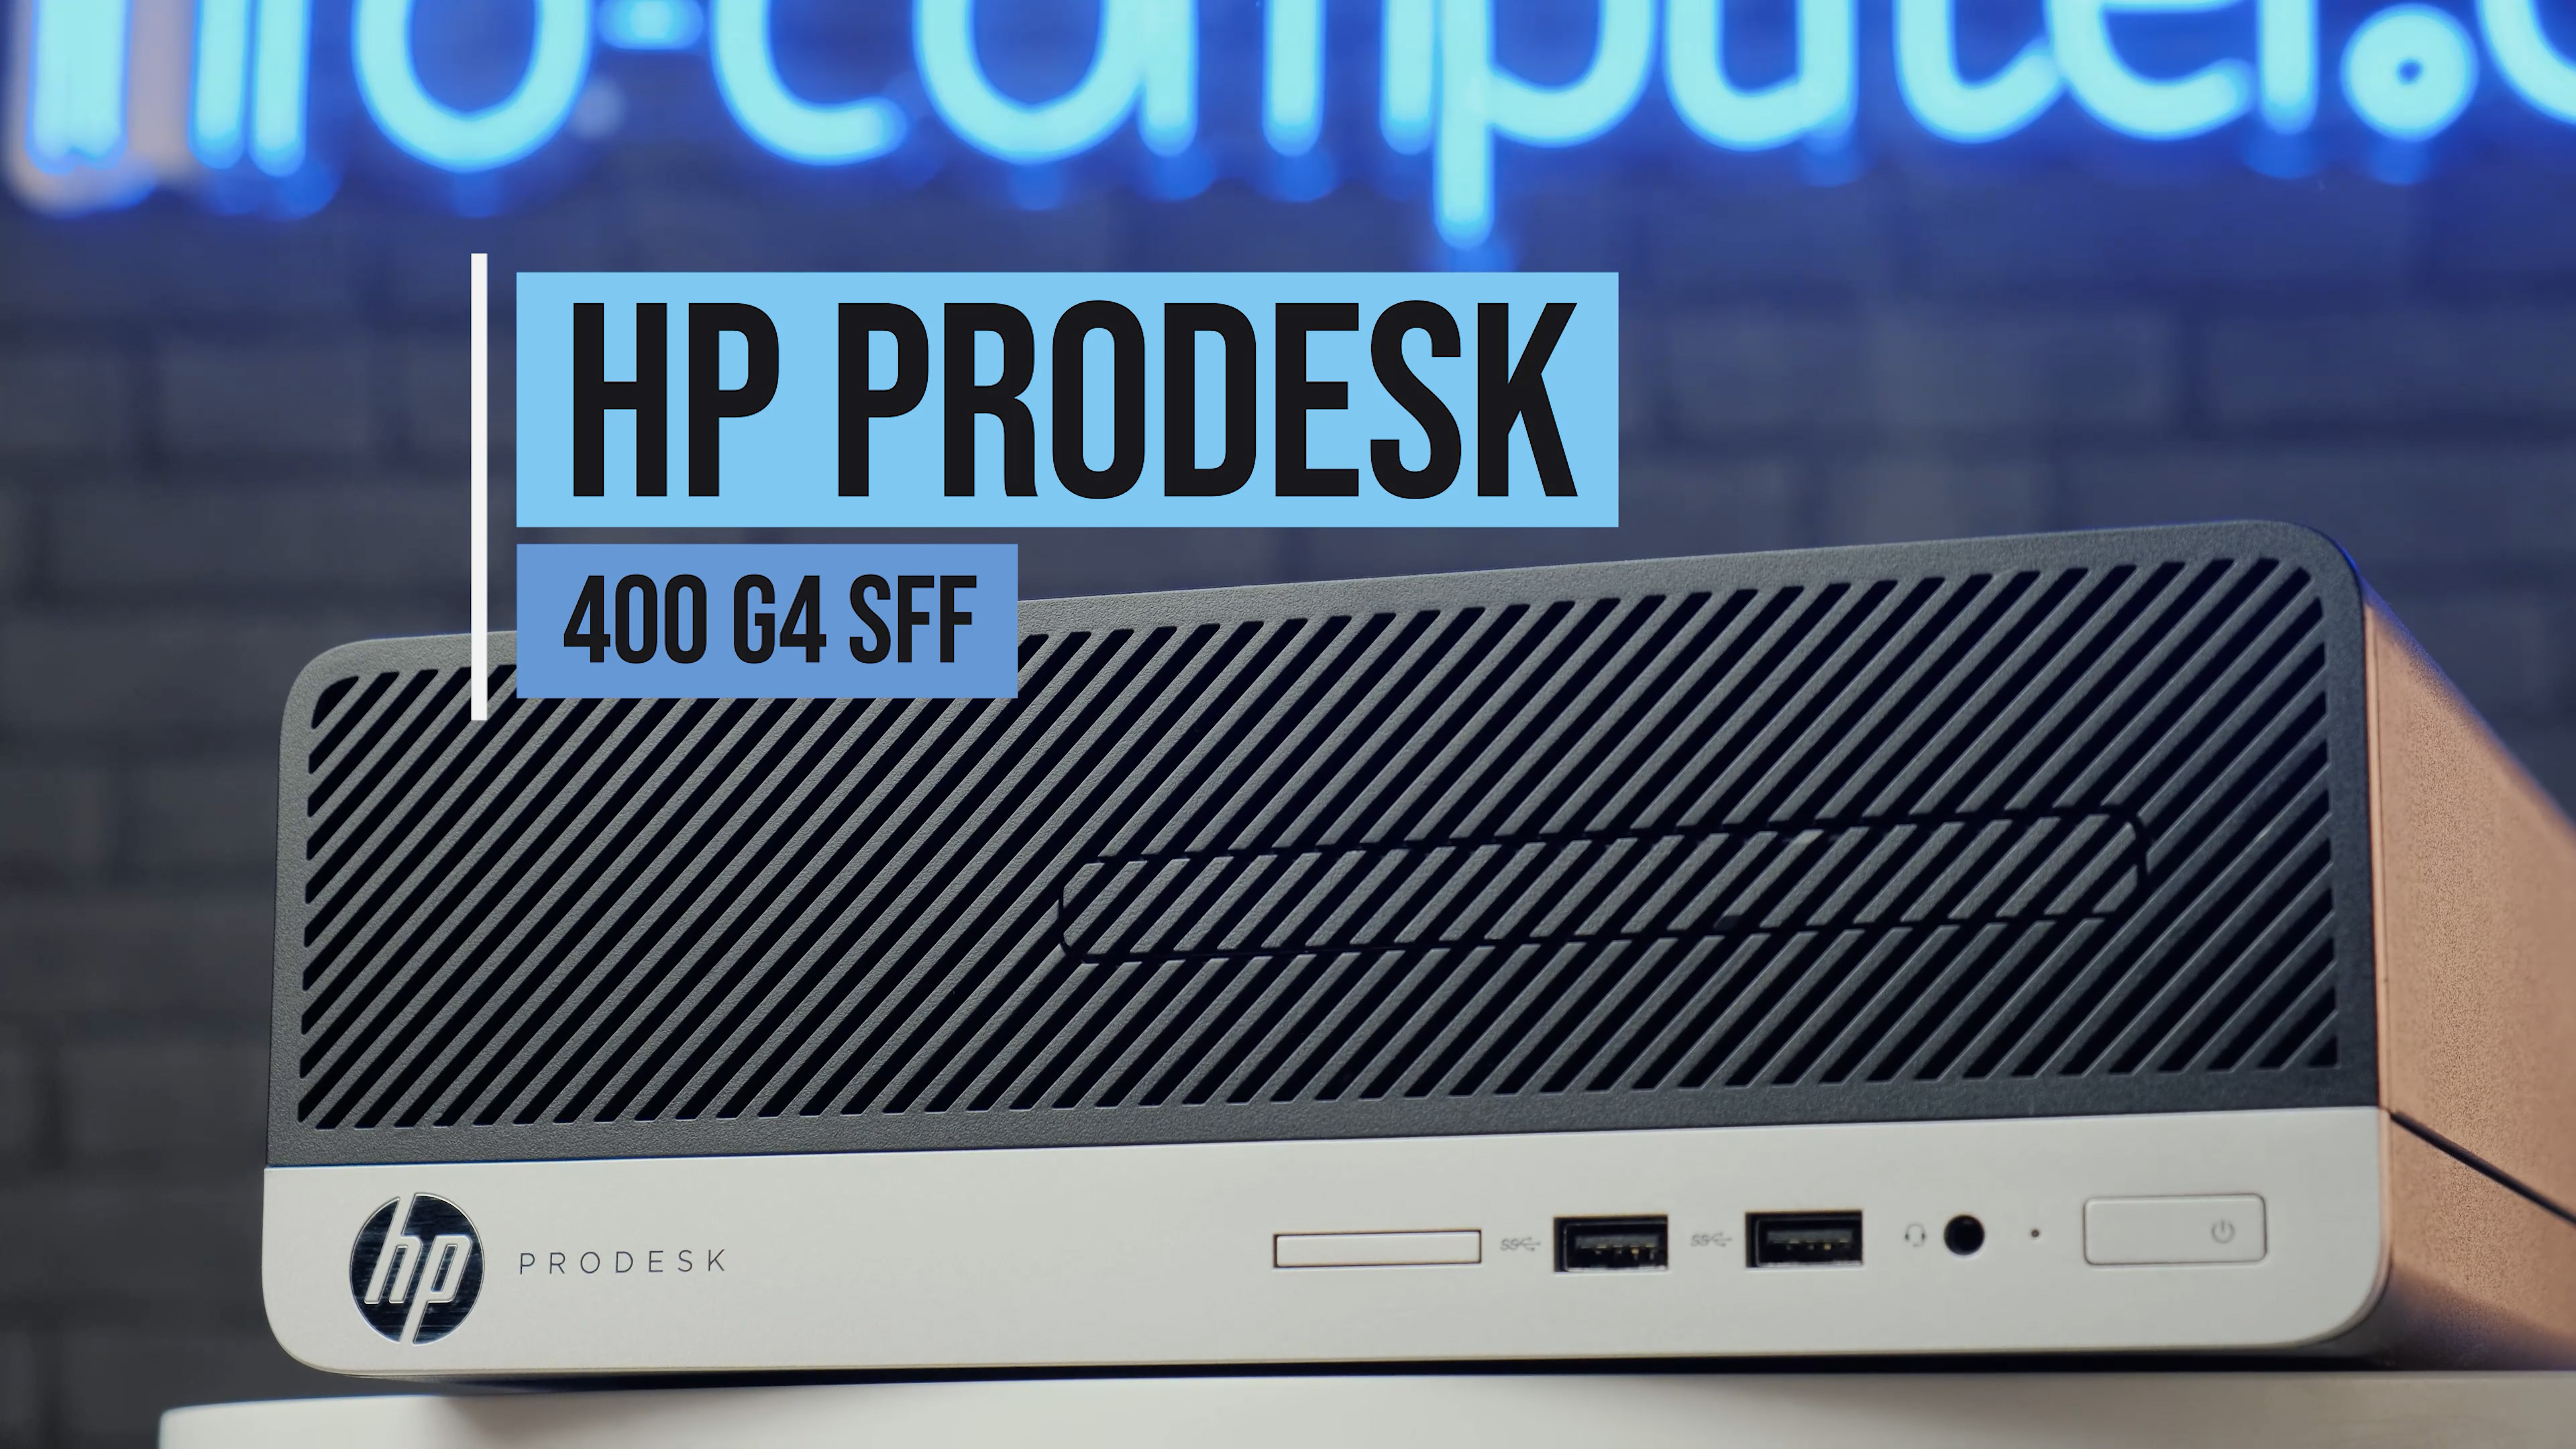 Compra el HP ProDesk 400 G4 SFF en nuestra tienda y aumenta la productividad en tu trabajo